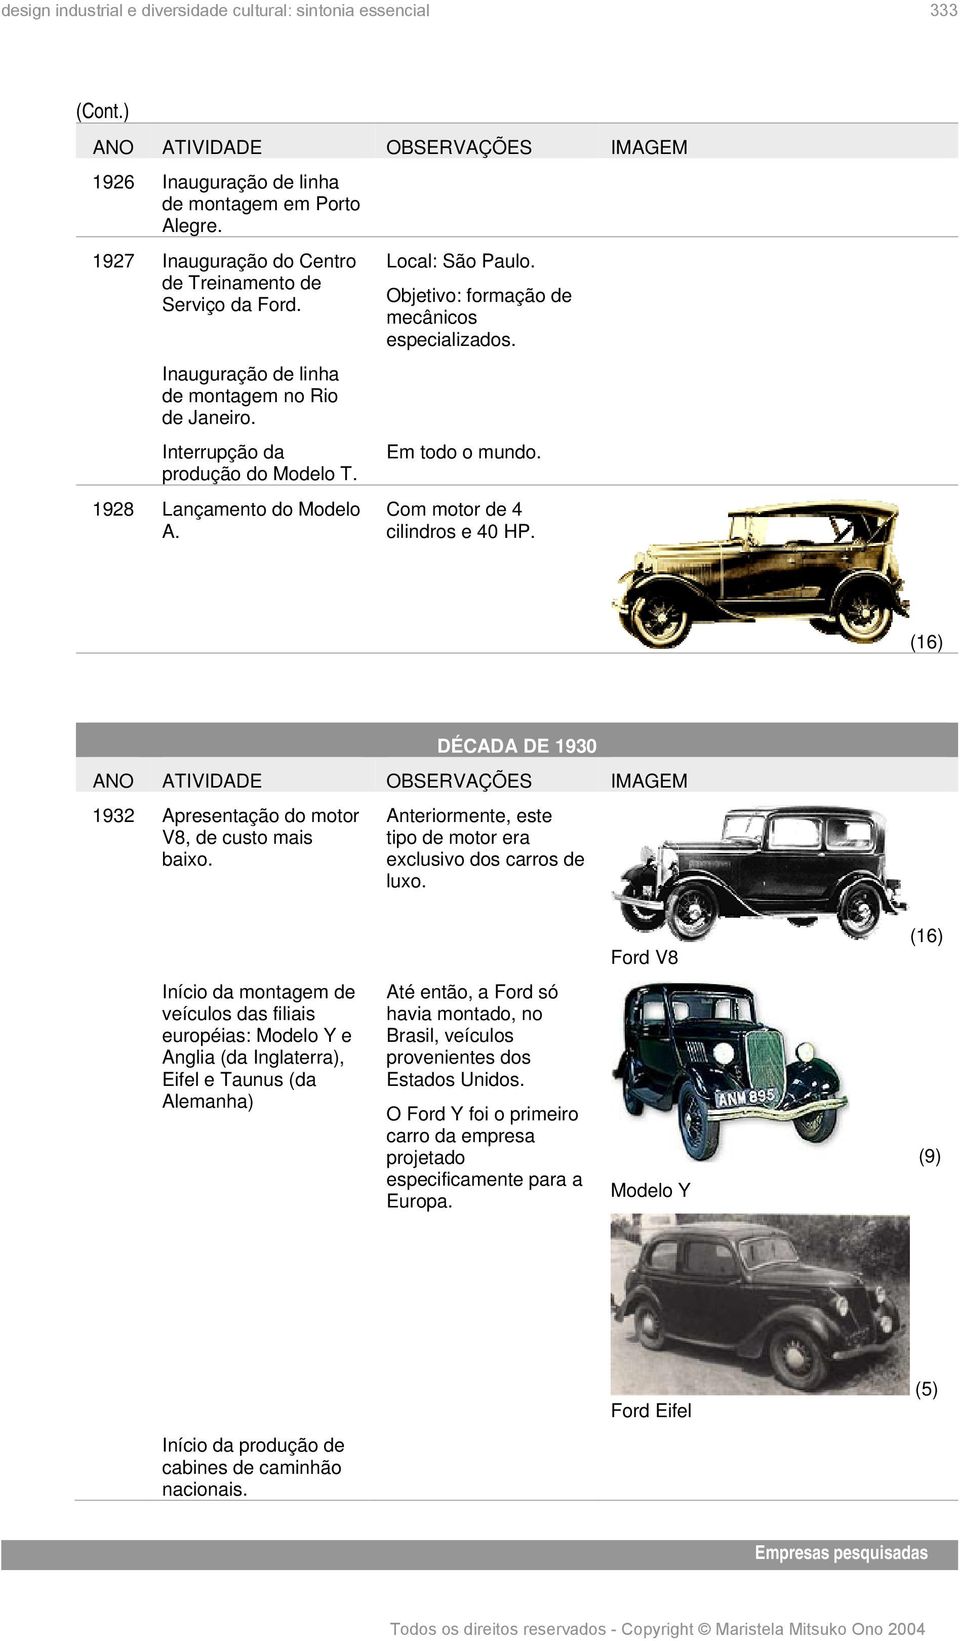 Com motor de 4 cilindros e 40 HP. (16) DÉCADA DE 1930 1932 Apresentação do motor V8, de custo mais baixo. Anteriormente, este tipo de motor era exclusivo dos carros de luxo.